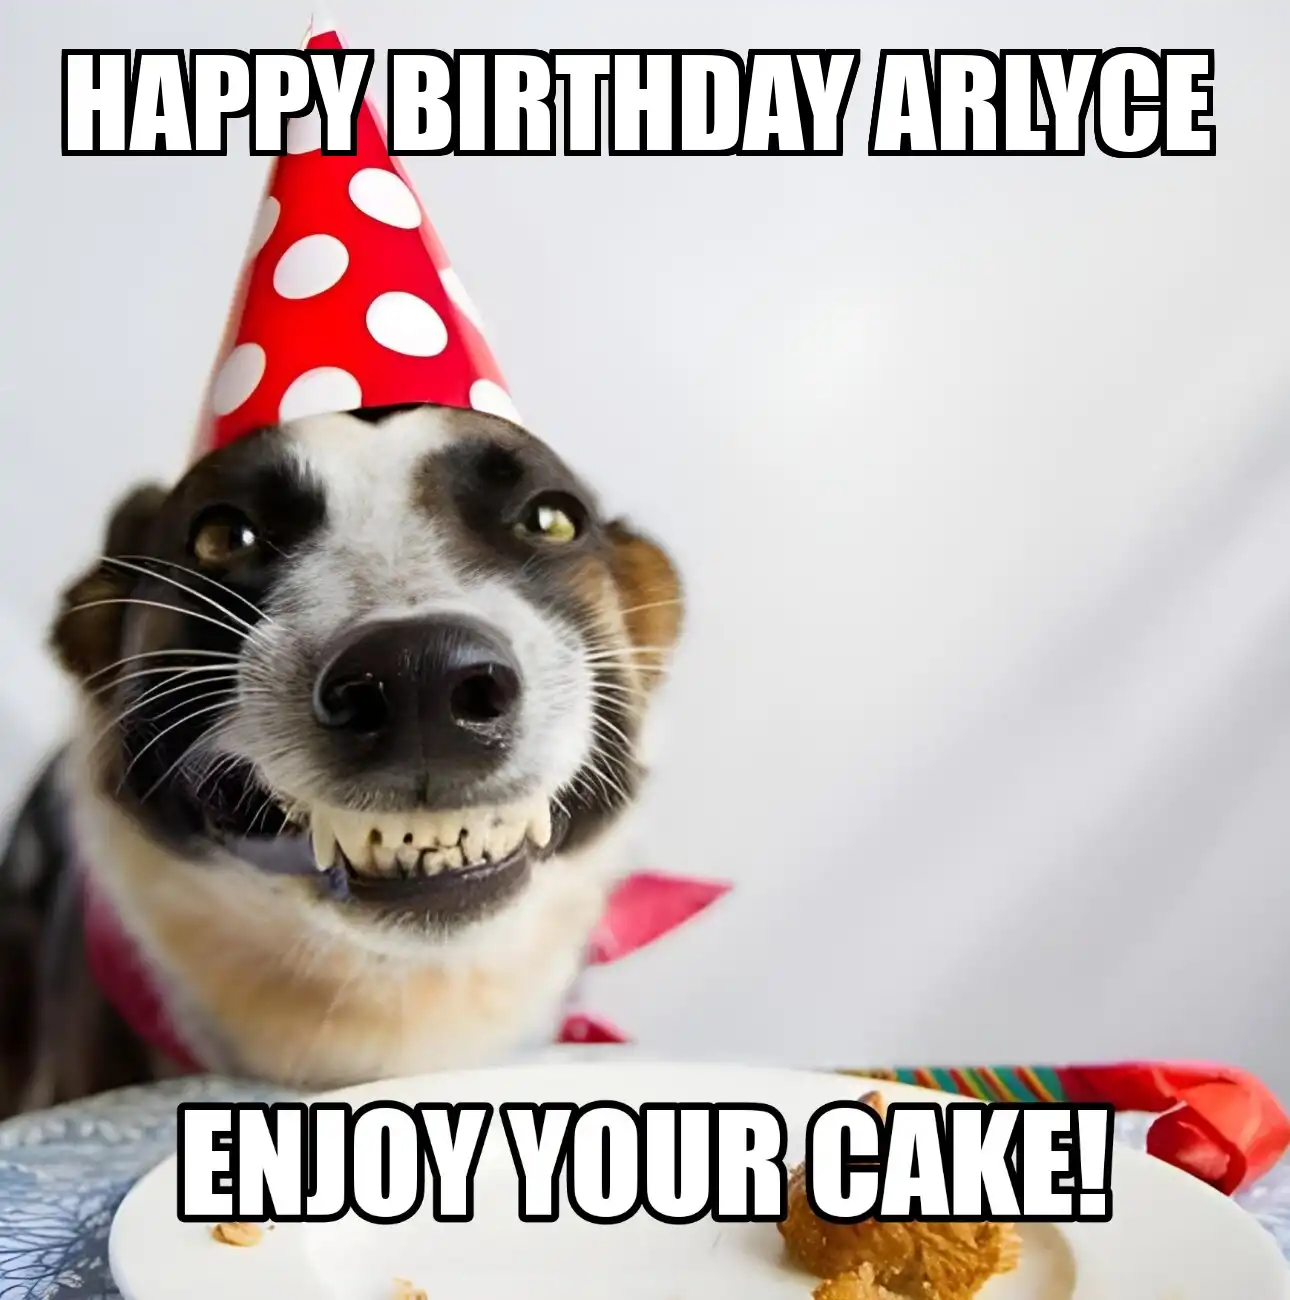 Happy Birthday Arlyce Enjoy Your Cake Dog Meme